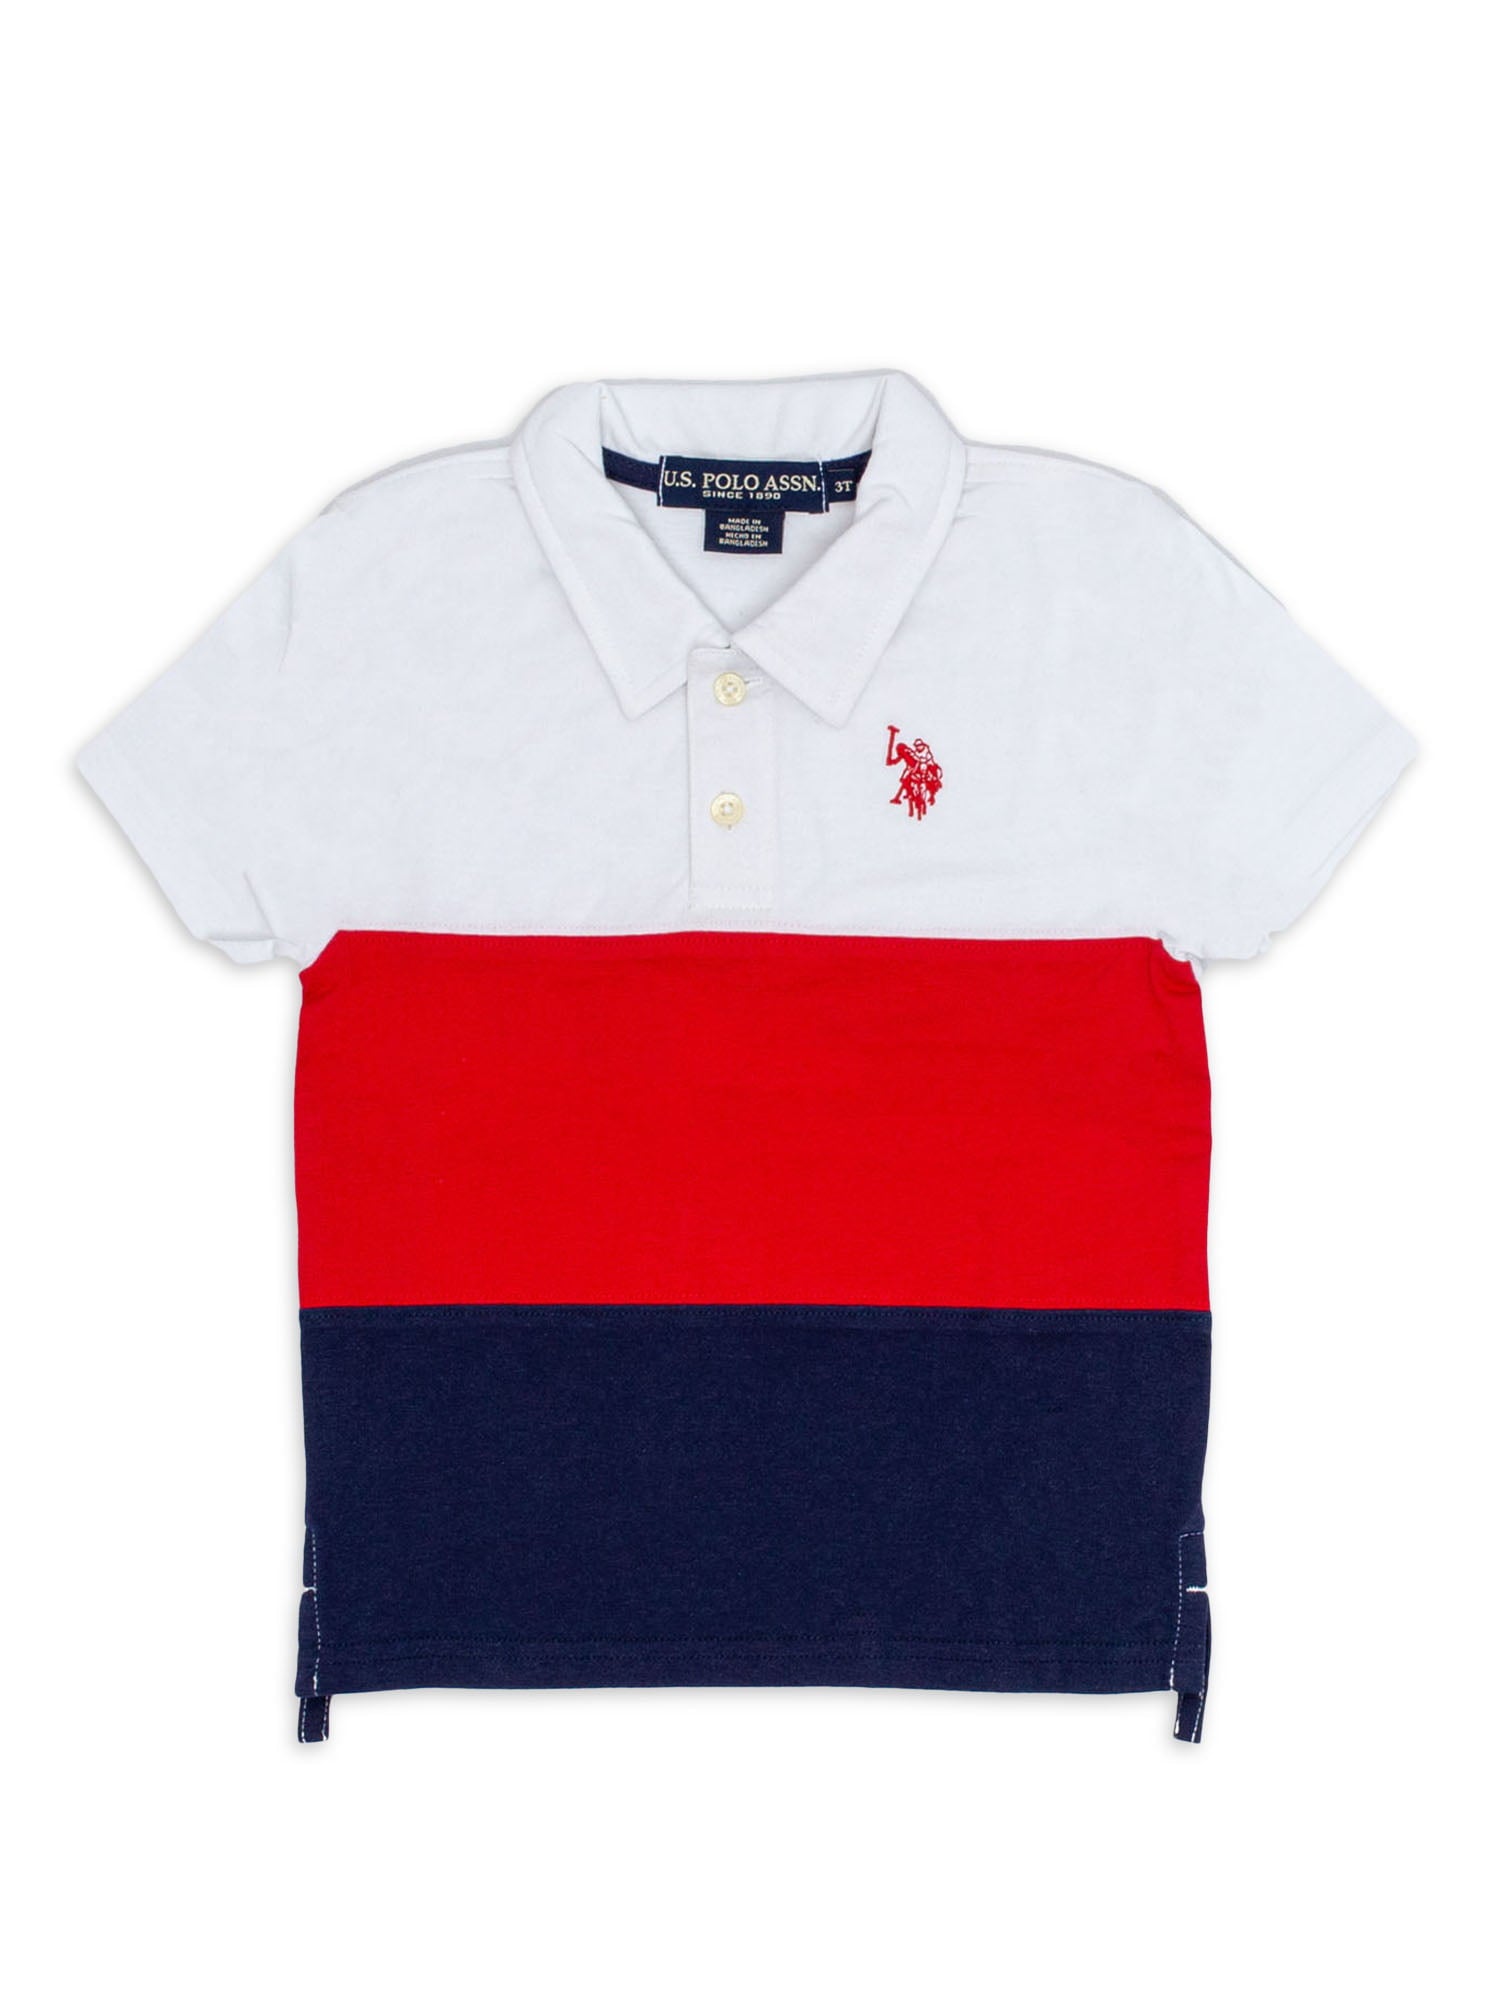 U.S. Polo Assn. Color Block Men Polo Neck White, Navy Blue T-shirt